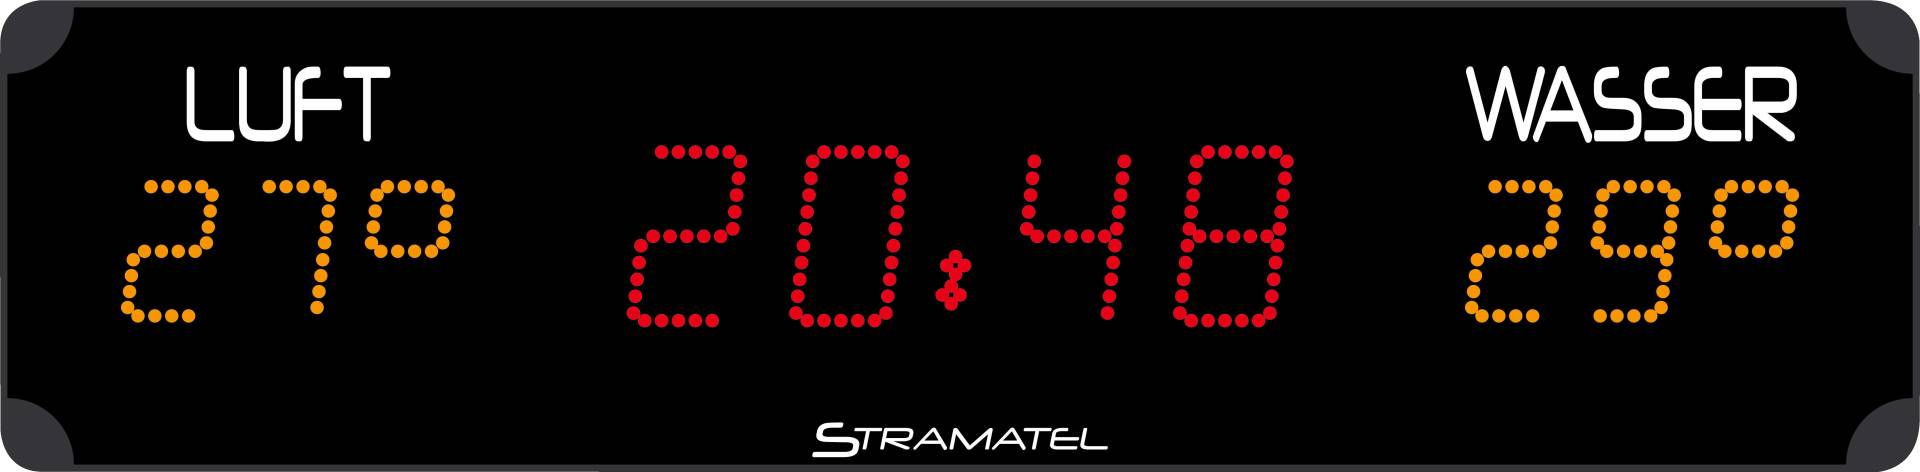 Stramatel Schwimmbad-Anzeigetafel "PHL 12.1" von Stramatel